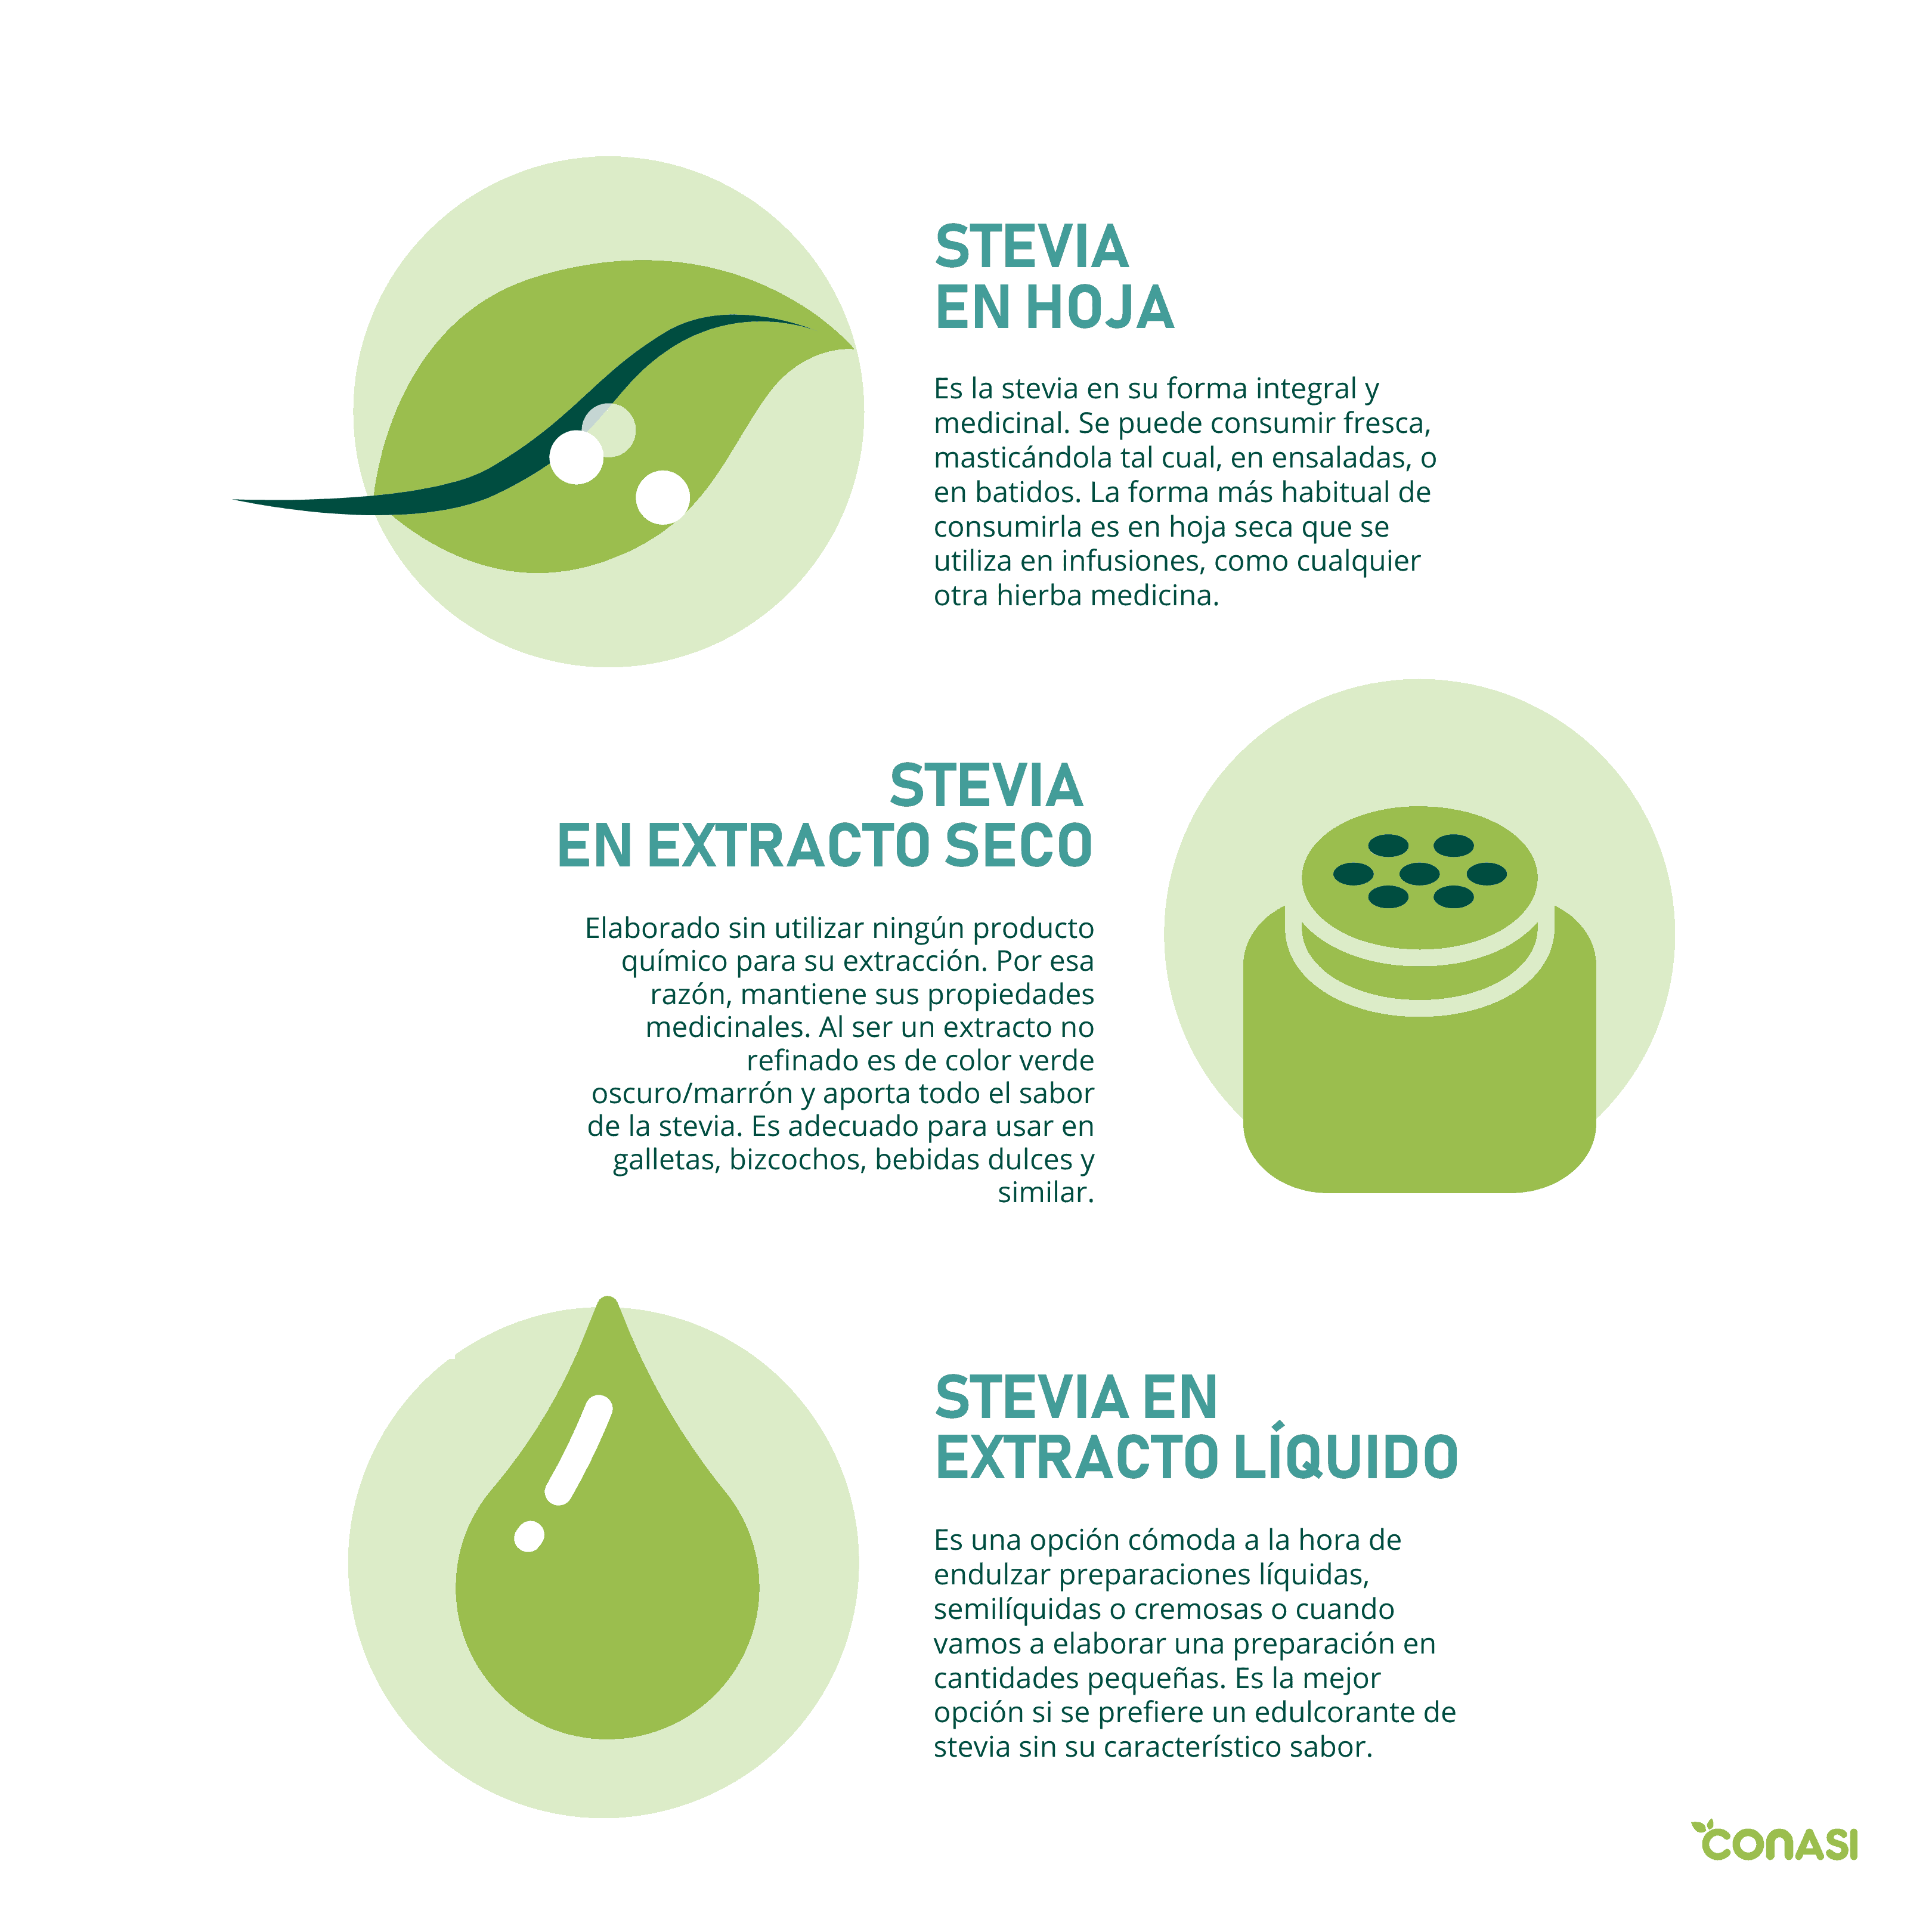 L'agroalimentaire va pouvoir généraliser l'usage de la stevia